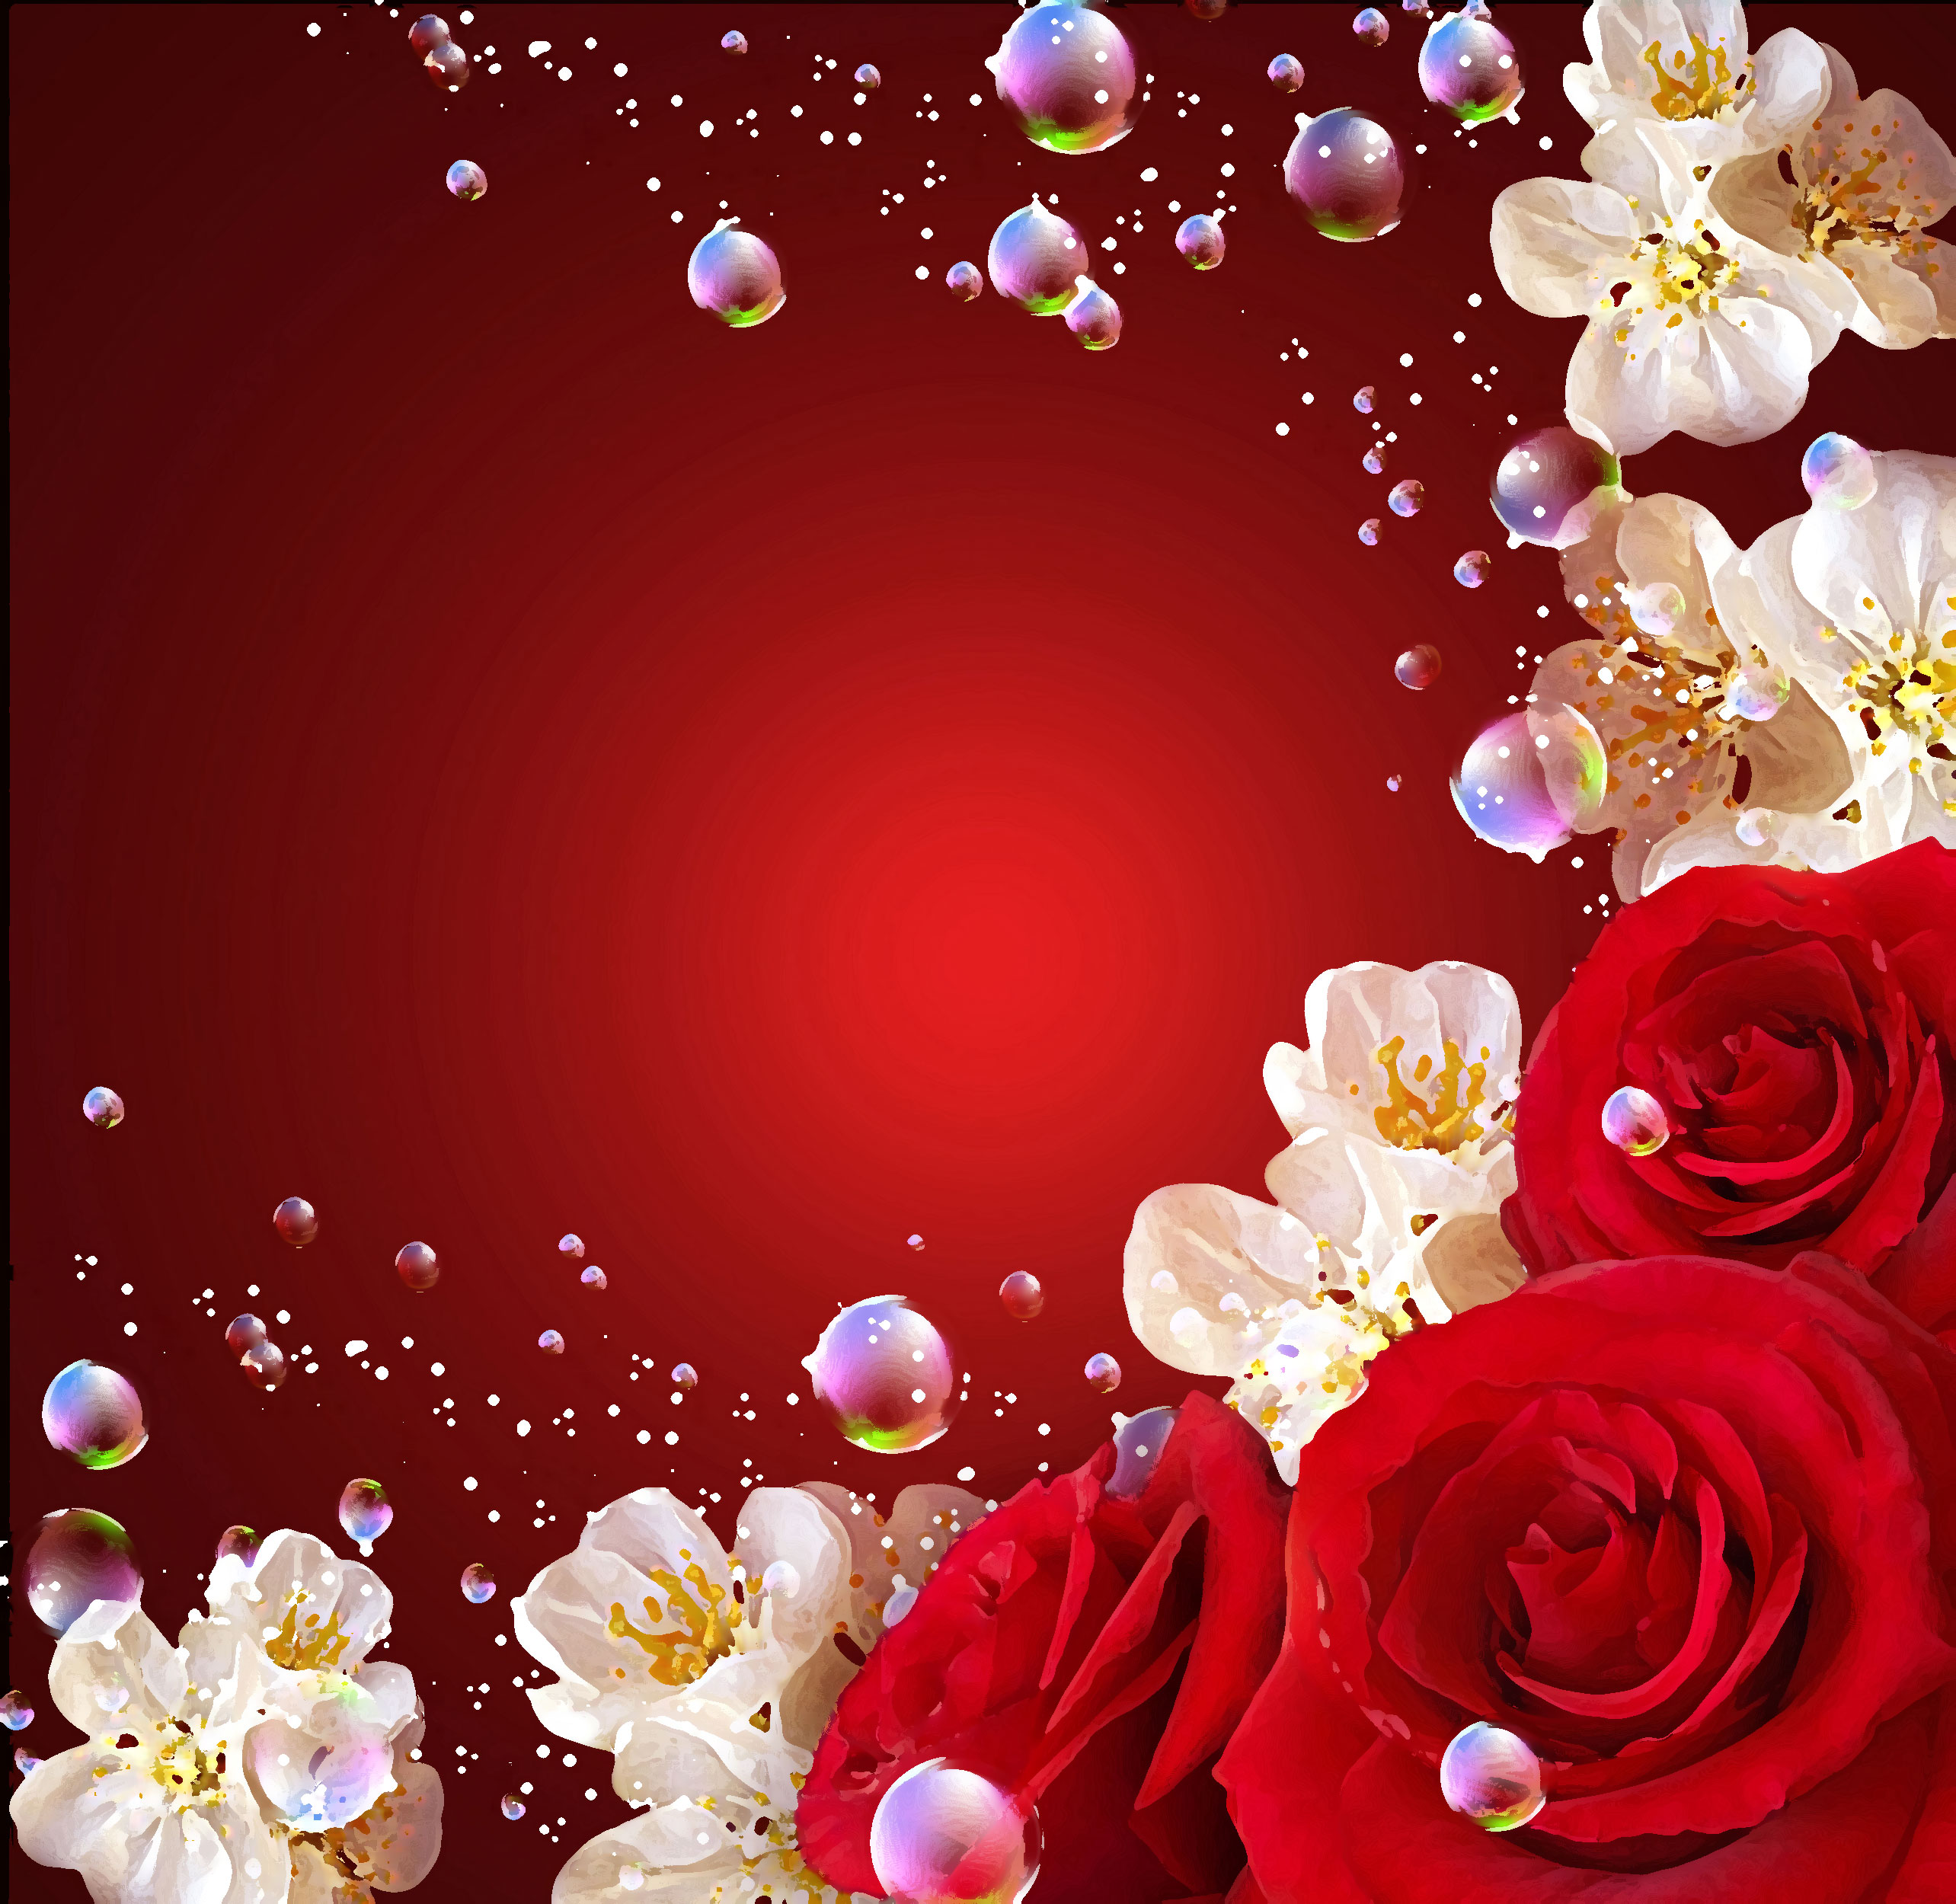 赤い花のイラスト フリー素材 背景 壁紙no 1002 赤バラ シャボン玉